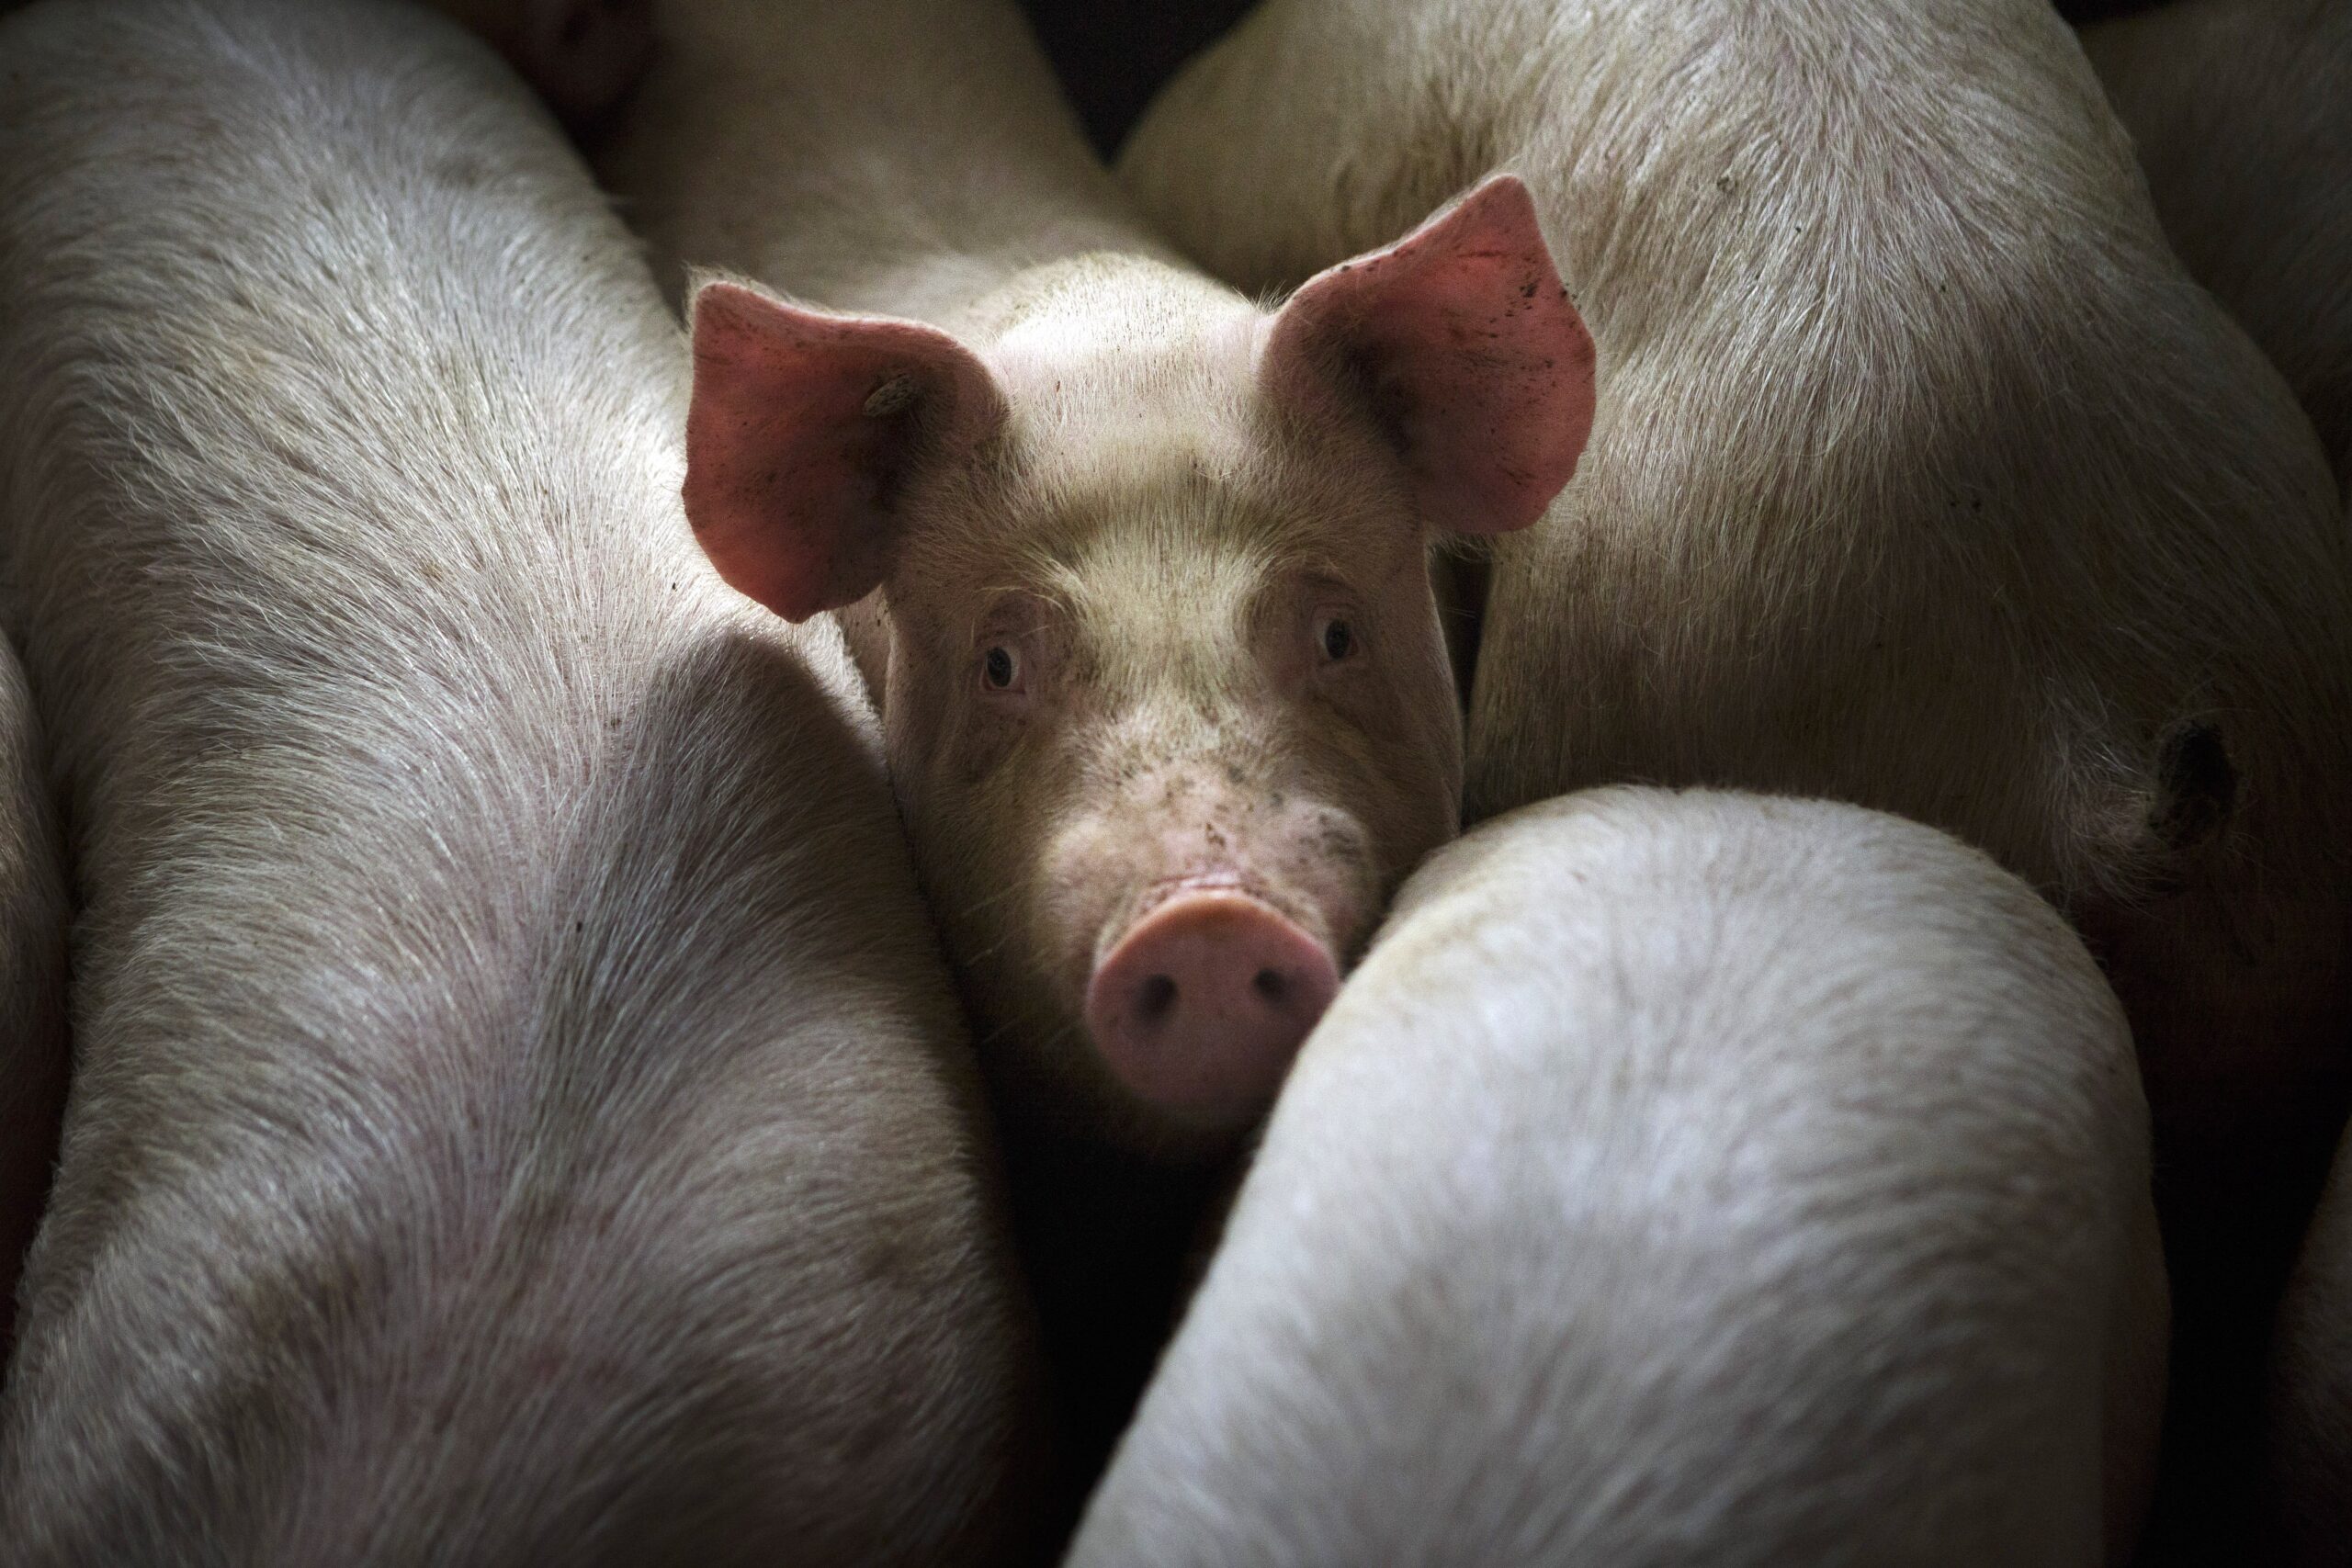  Взять под контроль продажу живых свиней и мяса через интернет предлагают отраслевые союзы